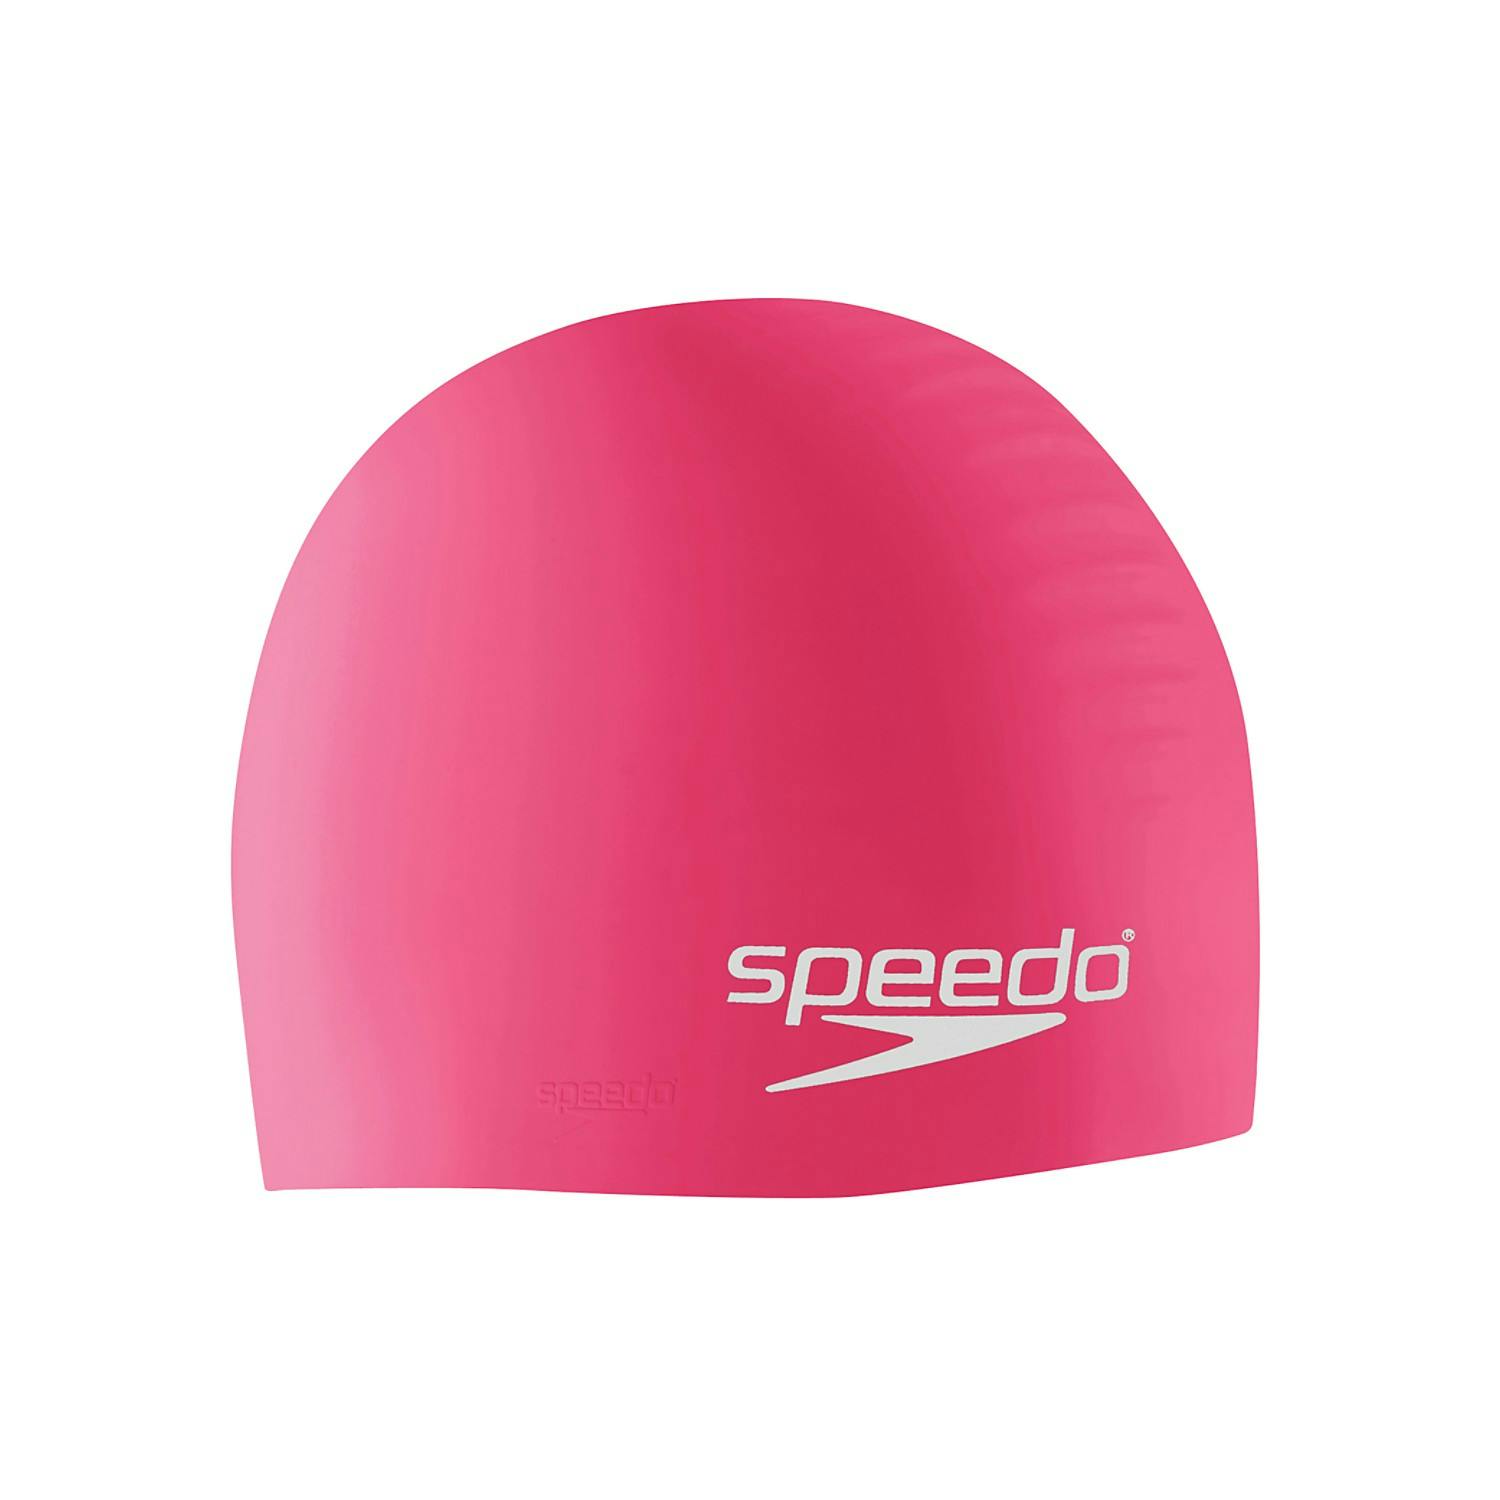 Speedo Unisex Silicone Swim Cap - Pink 